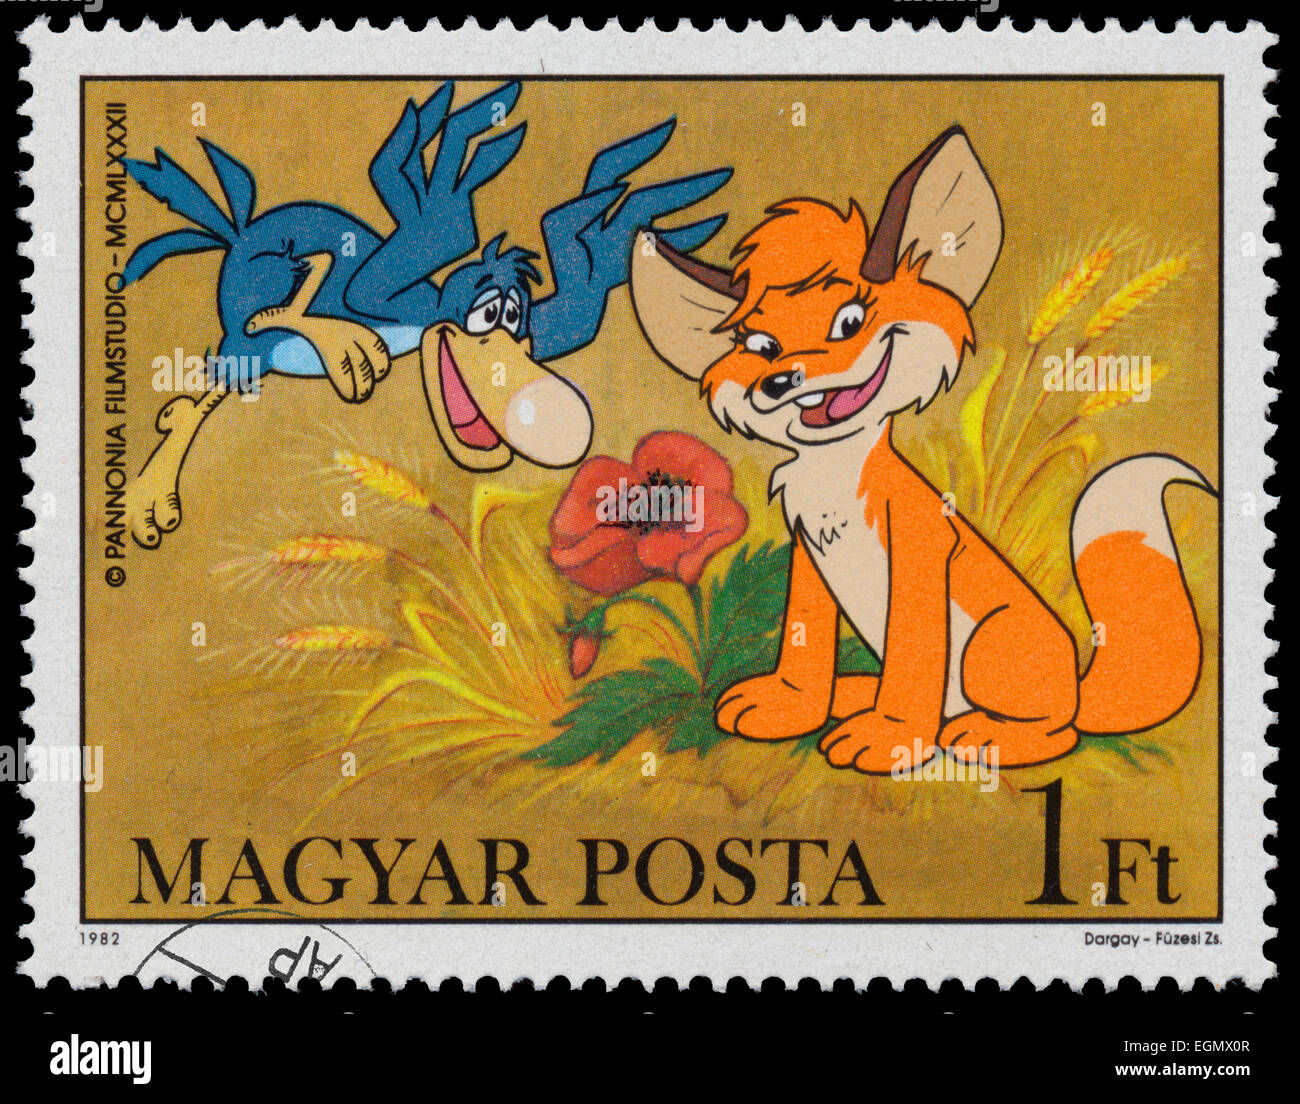 Hongrie - VERS 1982 : timbre imprimé par la Hongrie, montre des scènes de Vuk le Fox Cub, dessin d'Attila Dargay, vers 1982 Banque D'Images